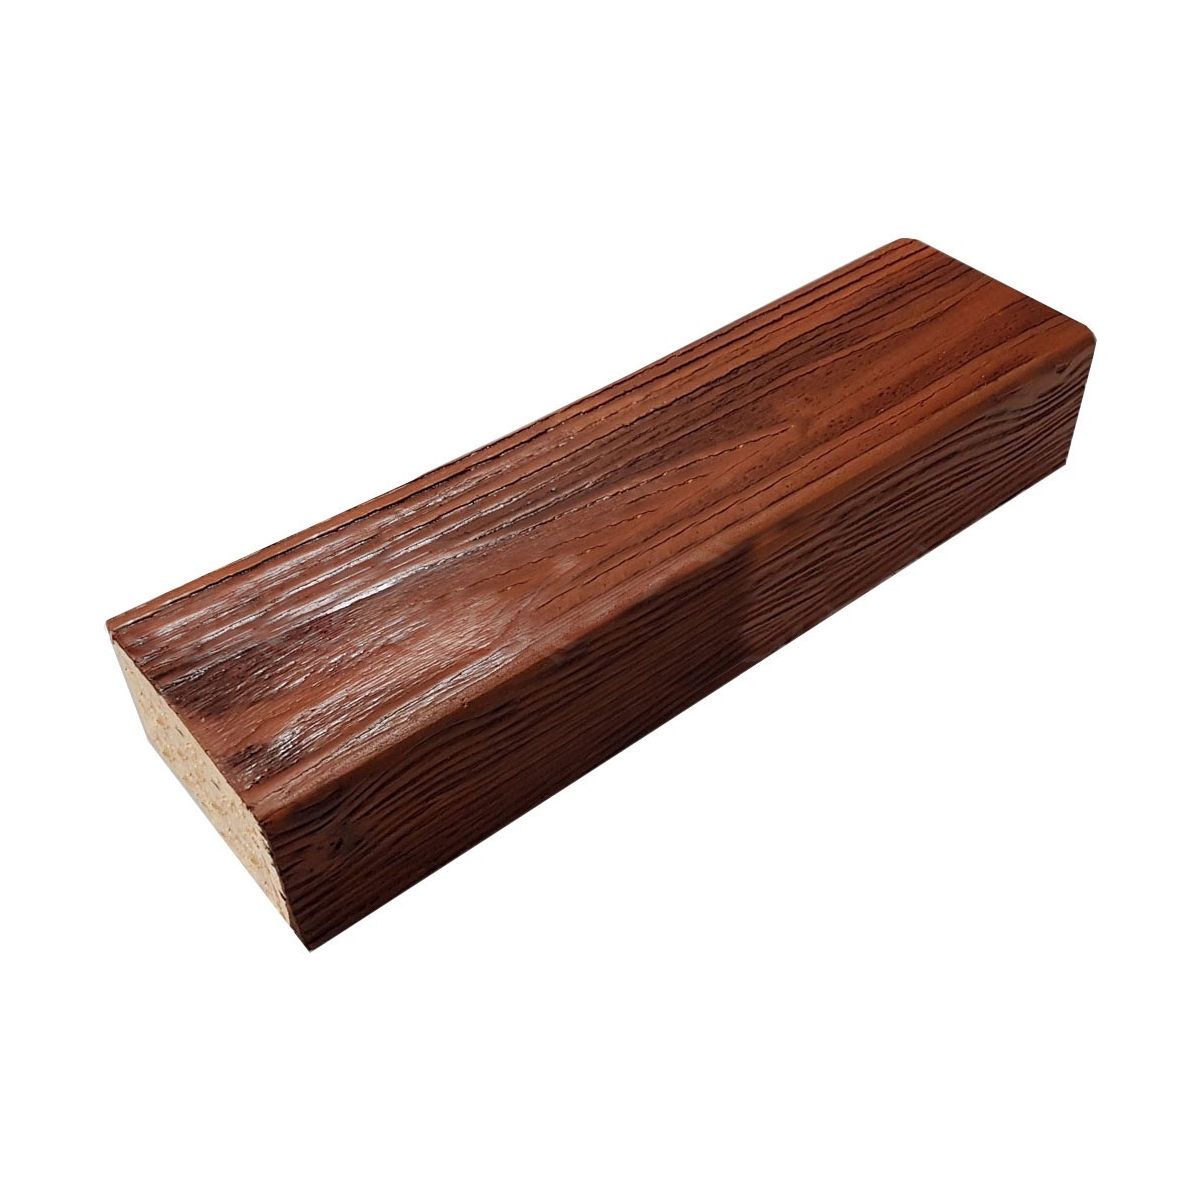 Viga imitación a madera fabricada en poliestireno extruido de 15x3x260 0